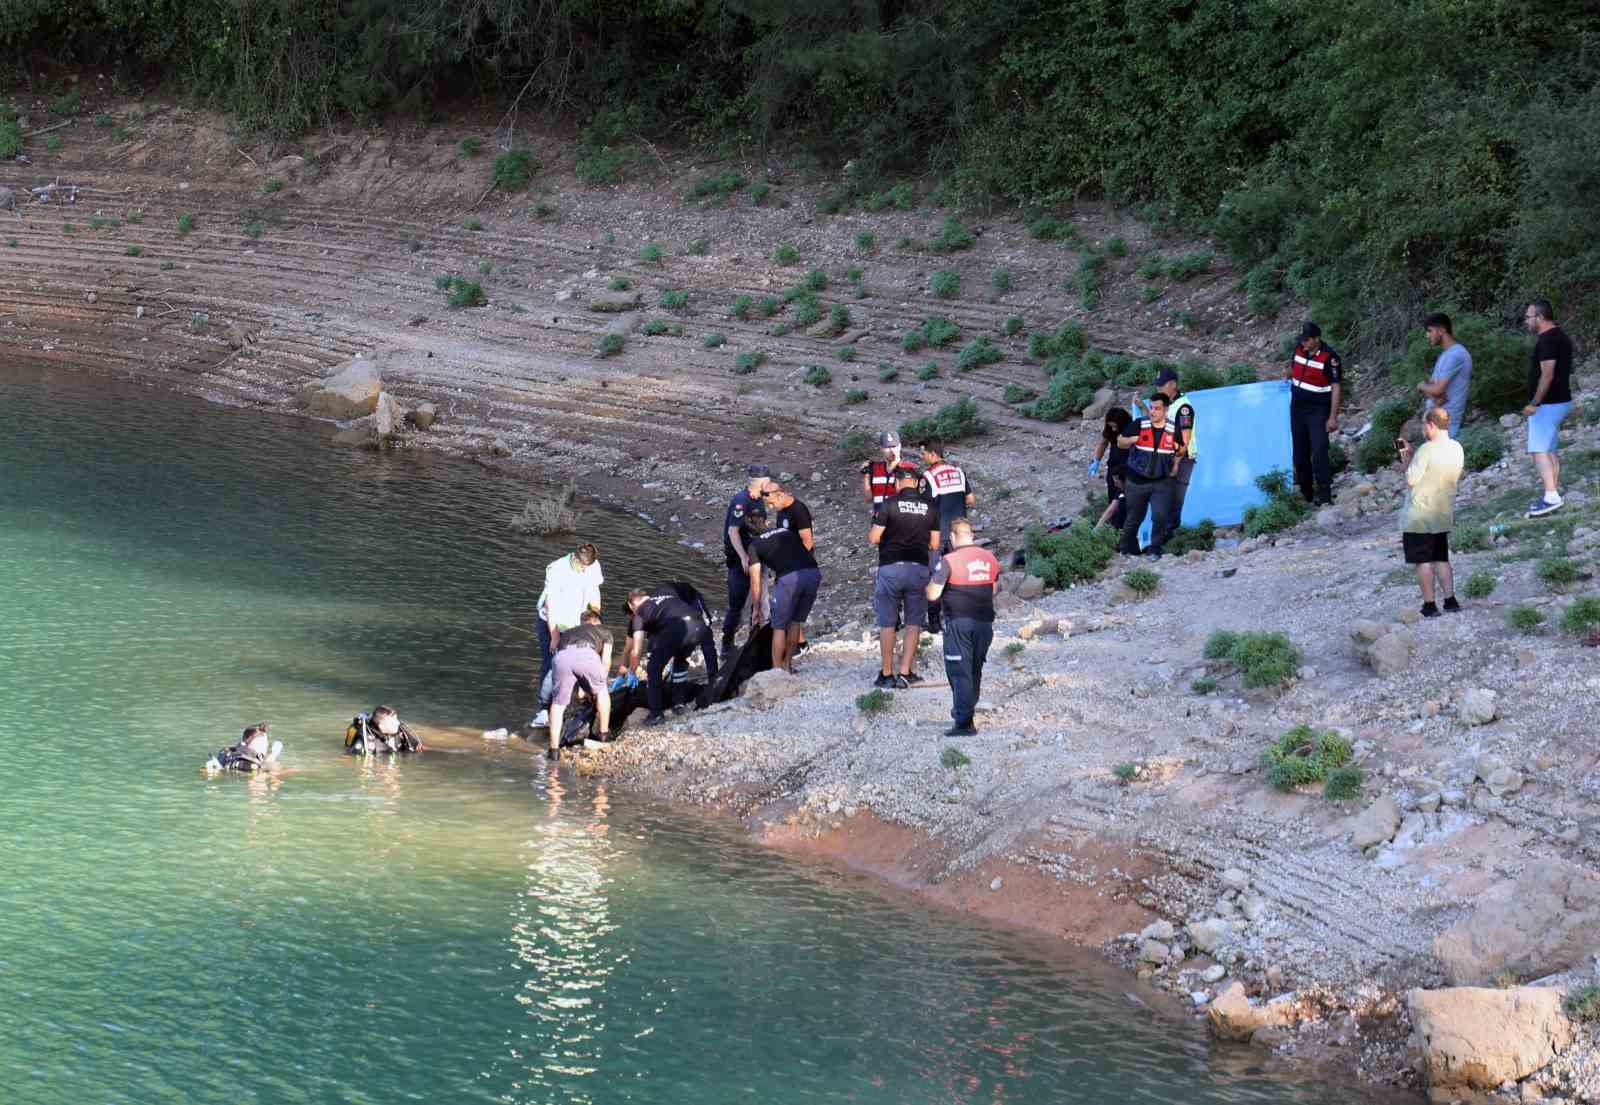 Gölette boğulan anne ve 2 çocuğunun cenazeleri Büyükşehir dalgıçları tarafından sudan çıkarıldı